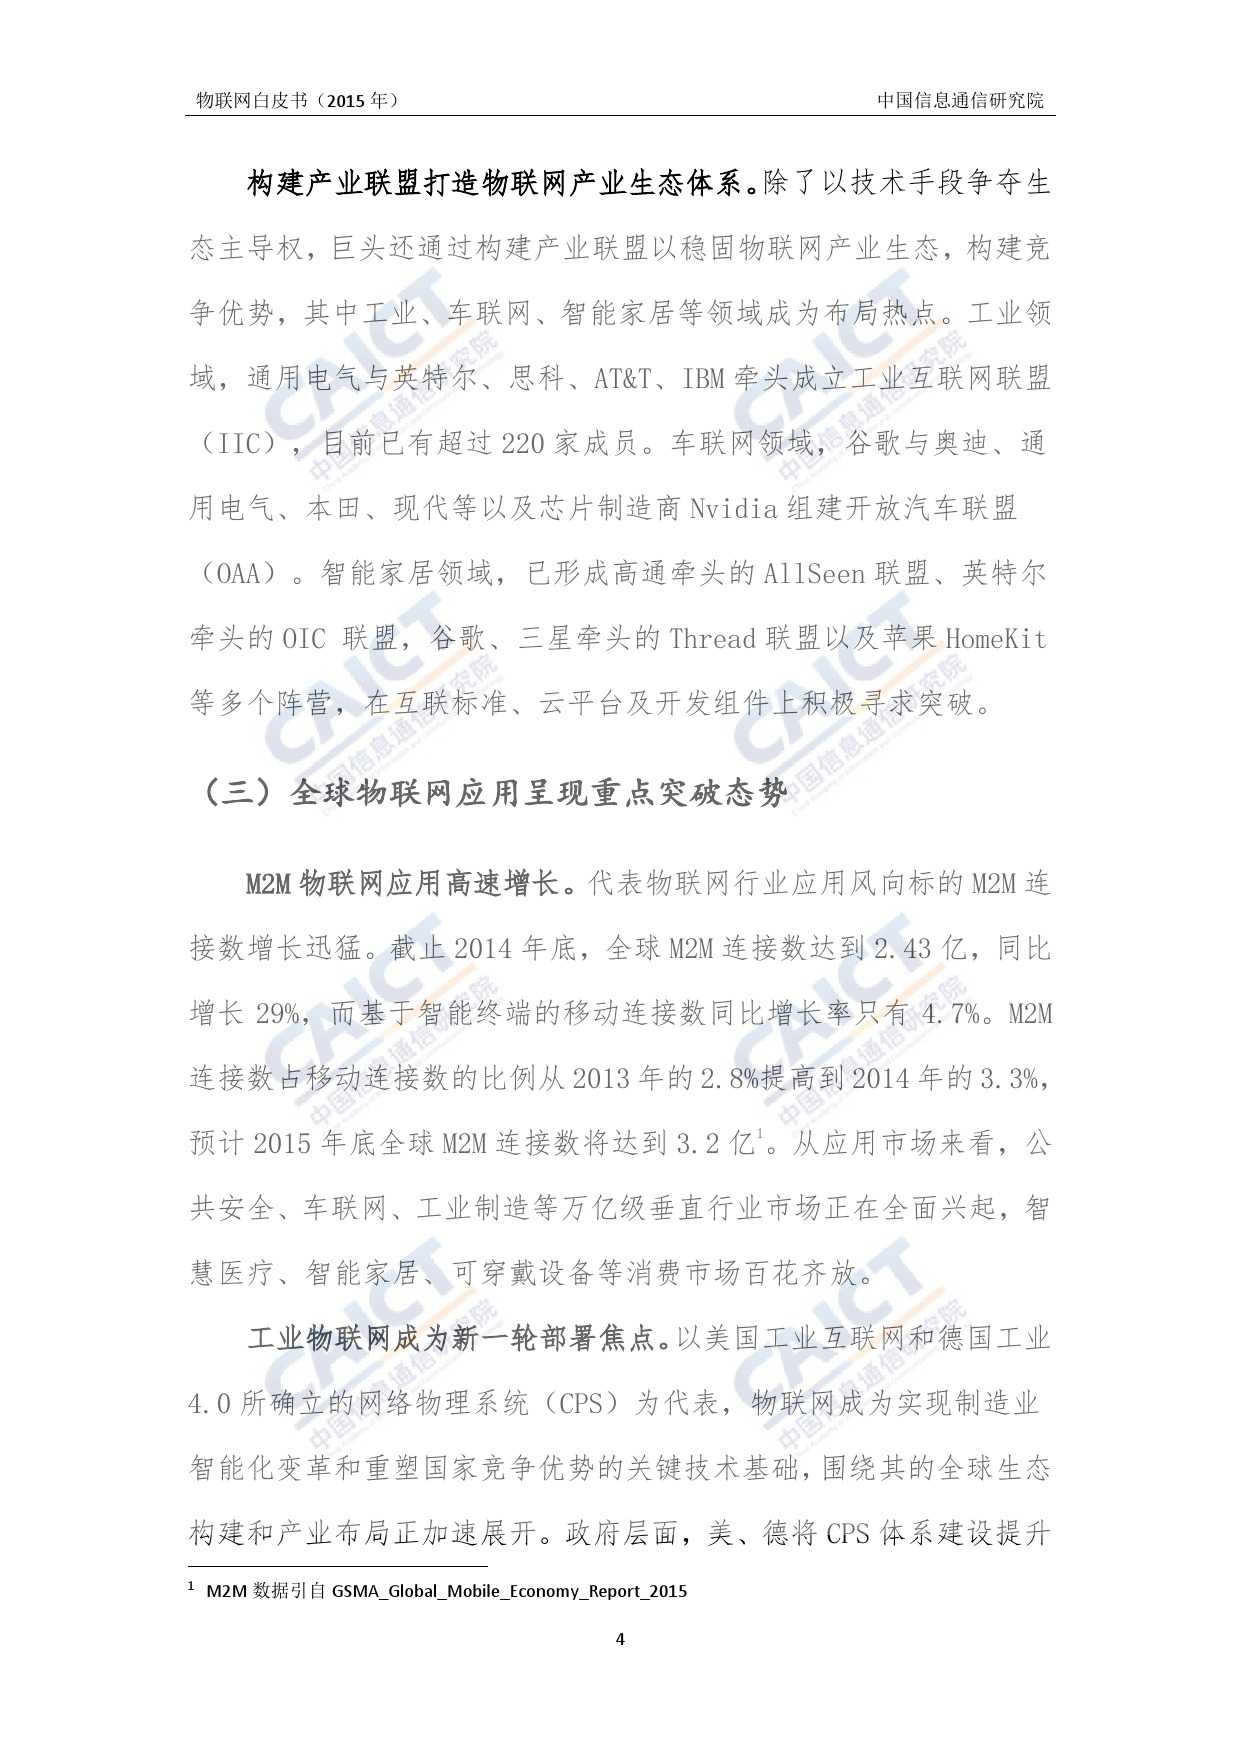 中国信息通信研究院：2015年物联网白皮书_000008